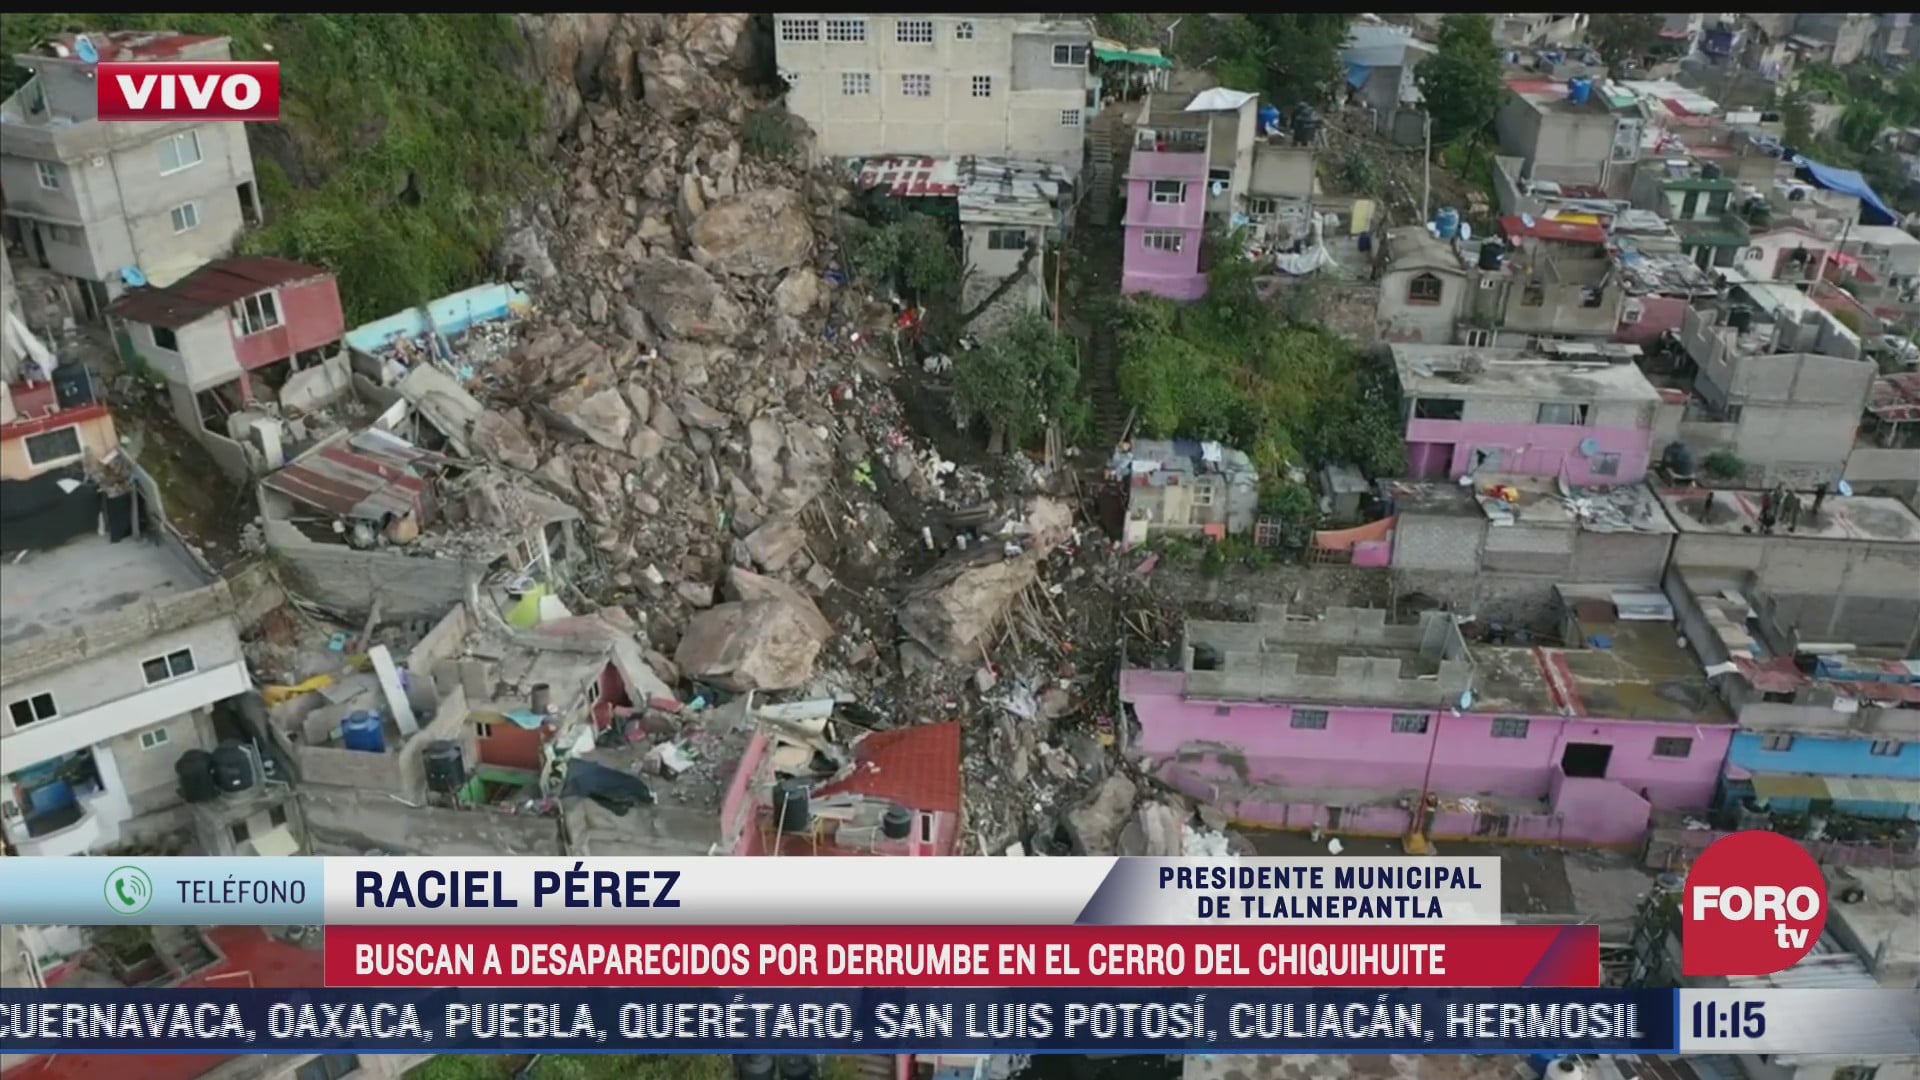 136 casas seran desalojadas tras el deslave en cerro de chiquihuite confirma raciel perez